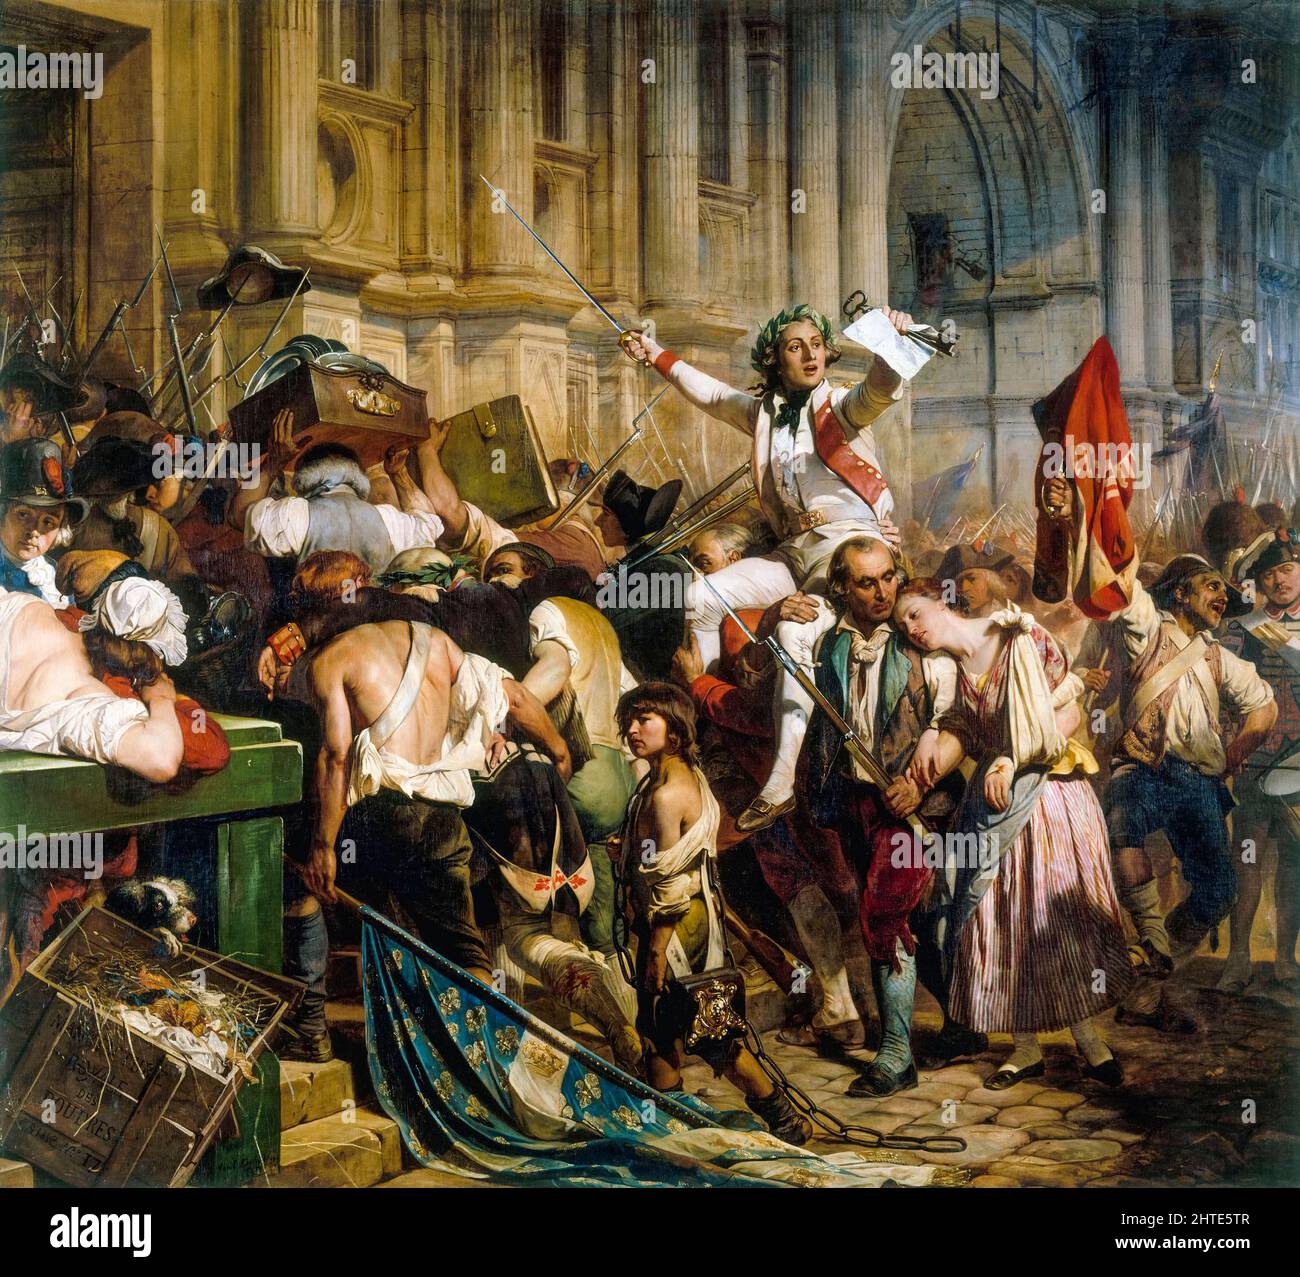 Les vainqueurs de la Bastille devant l'Hôtel de ville, juillet 14th 1789, huile sur toile peinture de la Révolution française de Paul Delaroche, 1830-1838 Banque D'Images